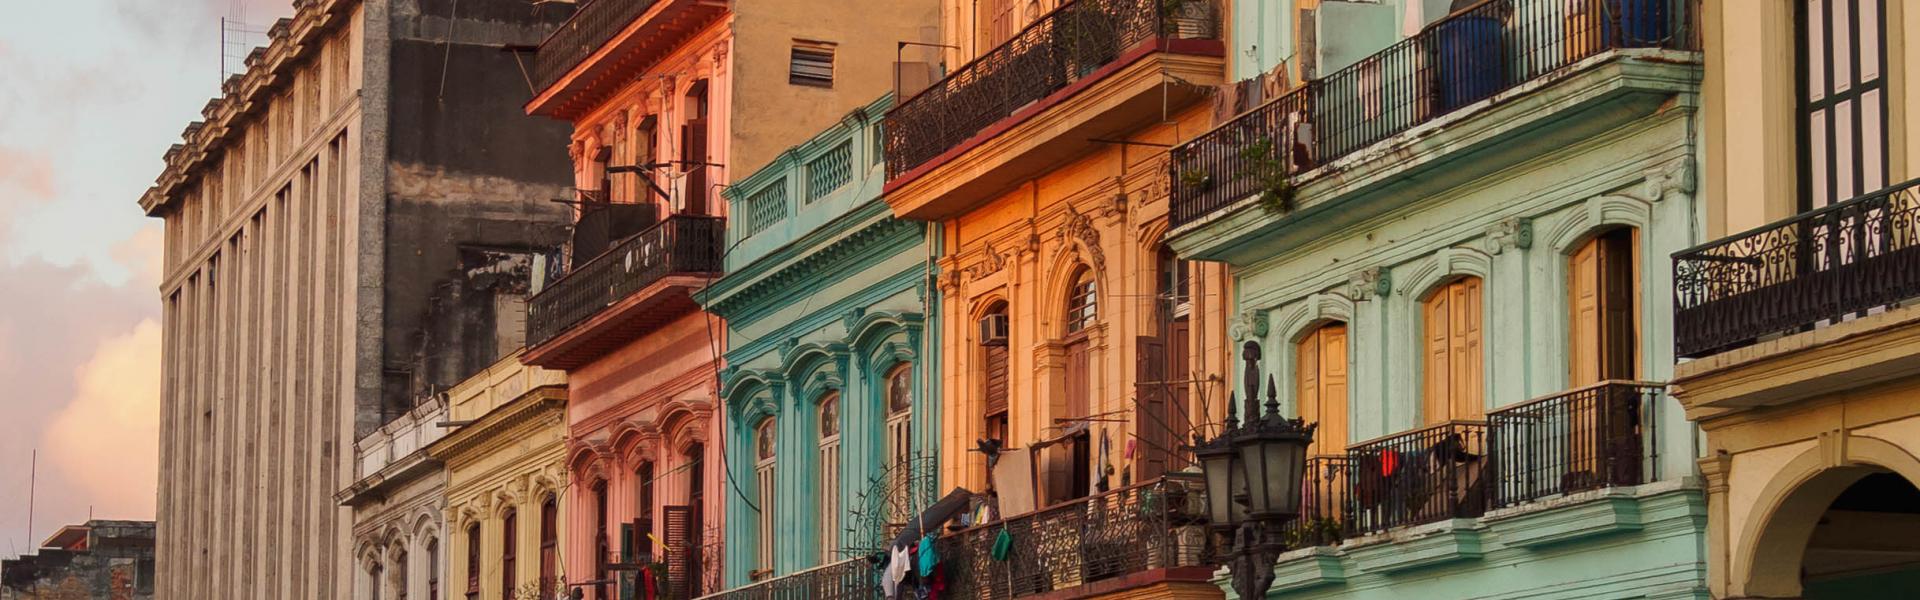 Alquileres y casas de vacaciones en Cuba - Wimdu